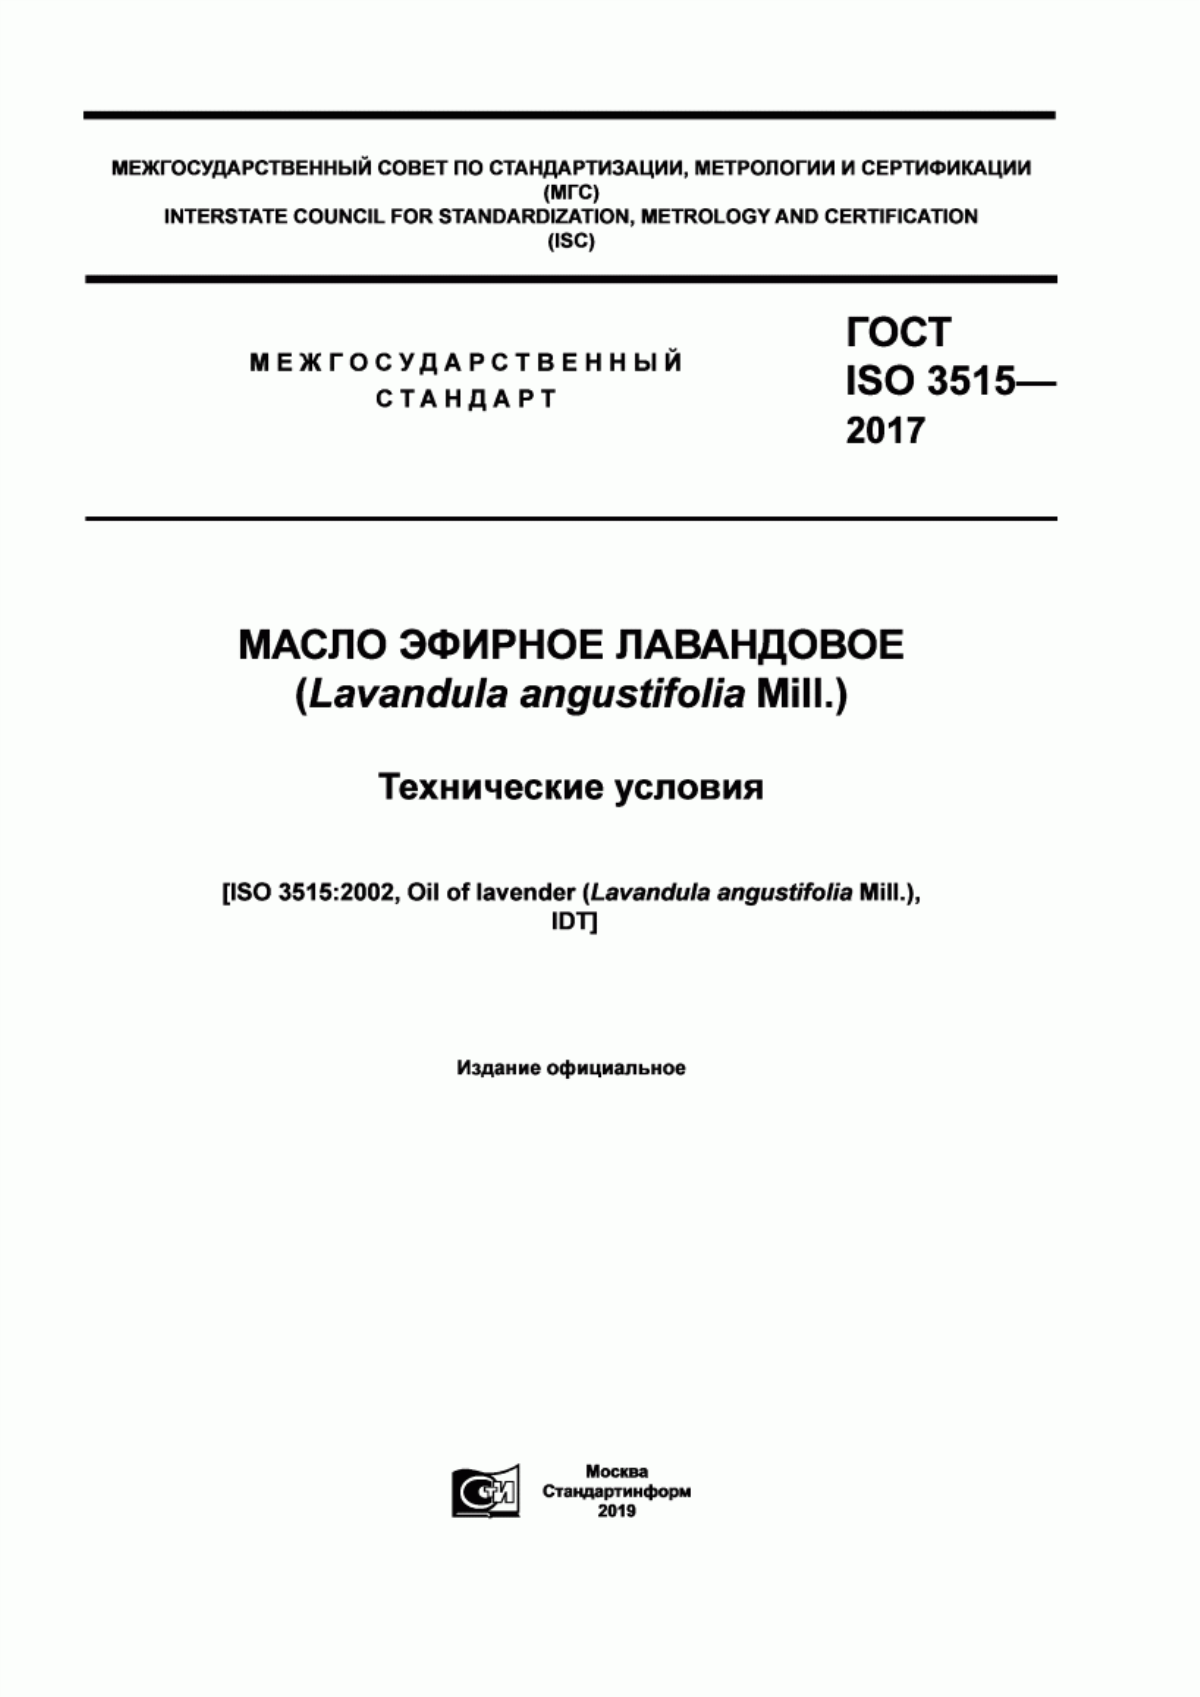 ГОСТ ISO 3515-2017 Масло эфирное лавандовое (Lavandula angustifolia Mill.). Технические условия